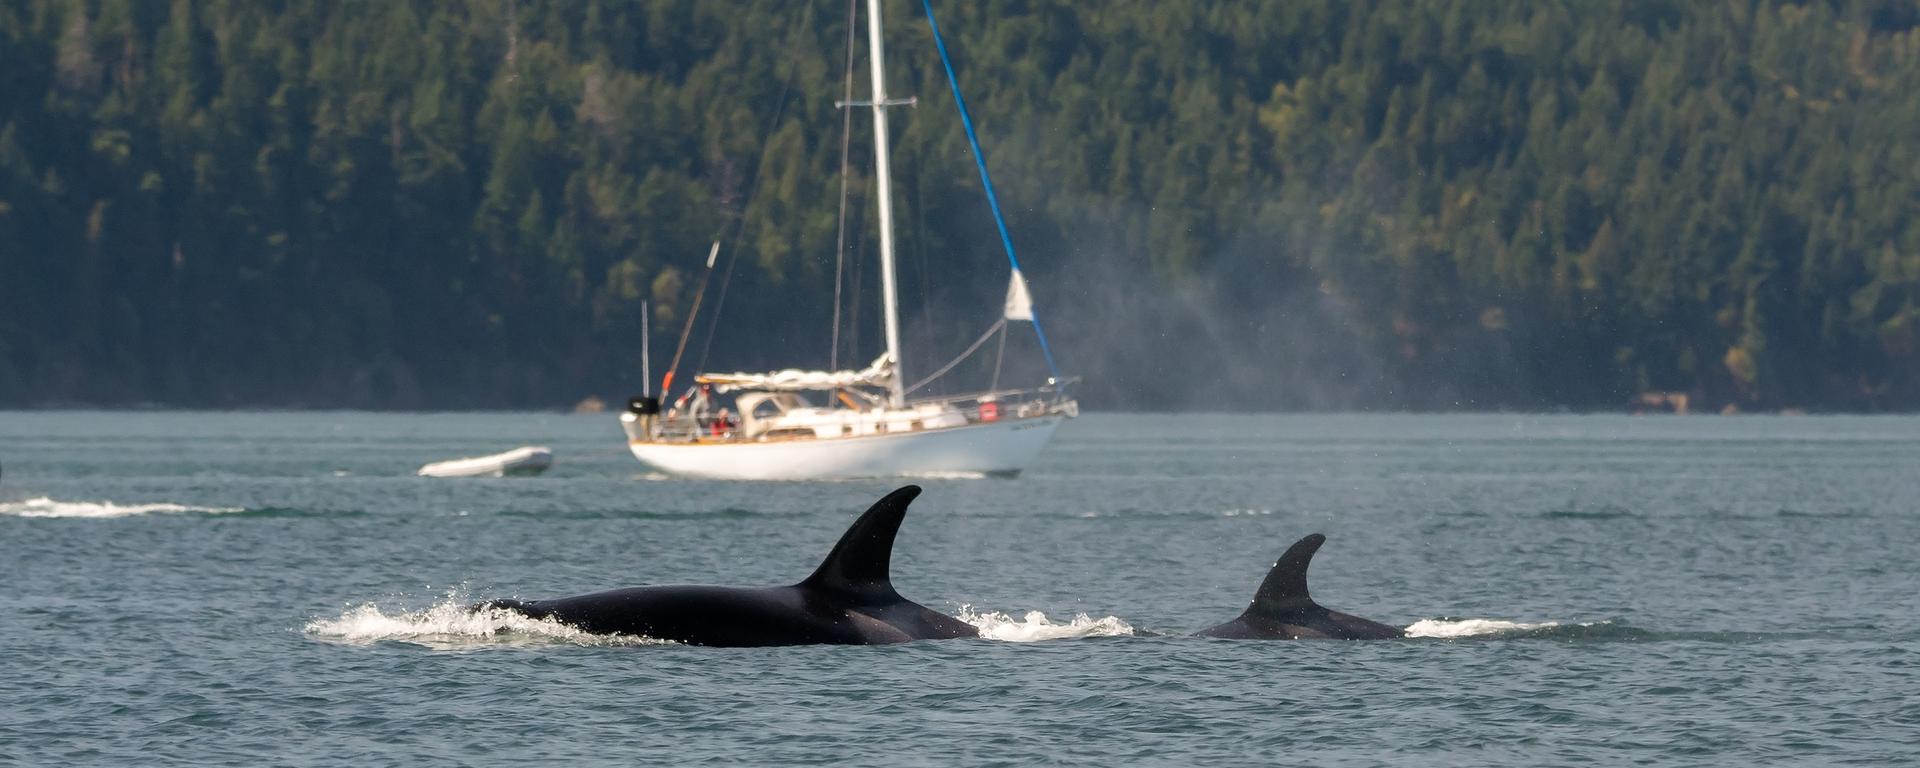 El extraño fenómeno de las orcas que embisten naves inquieta en Europa